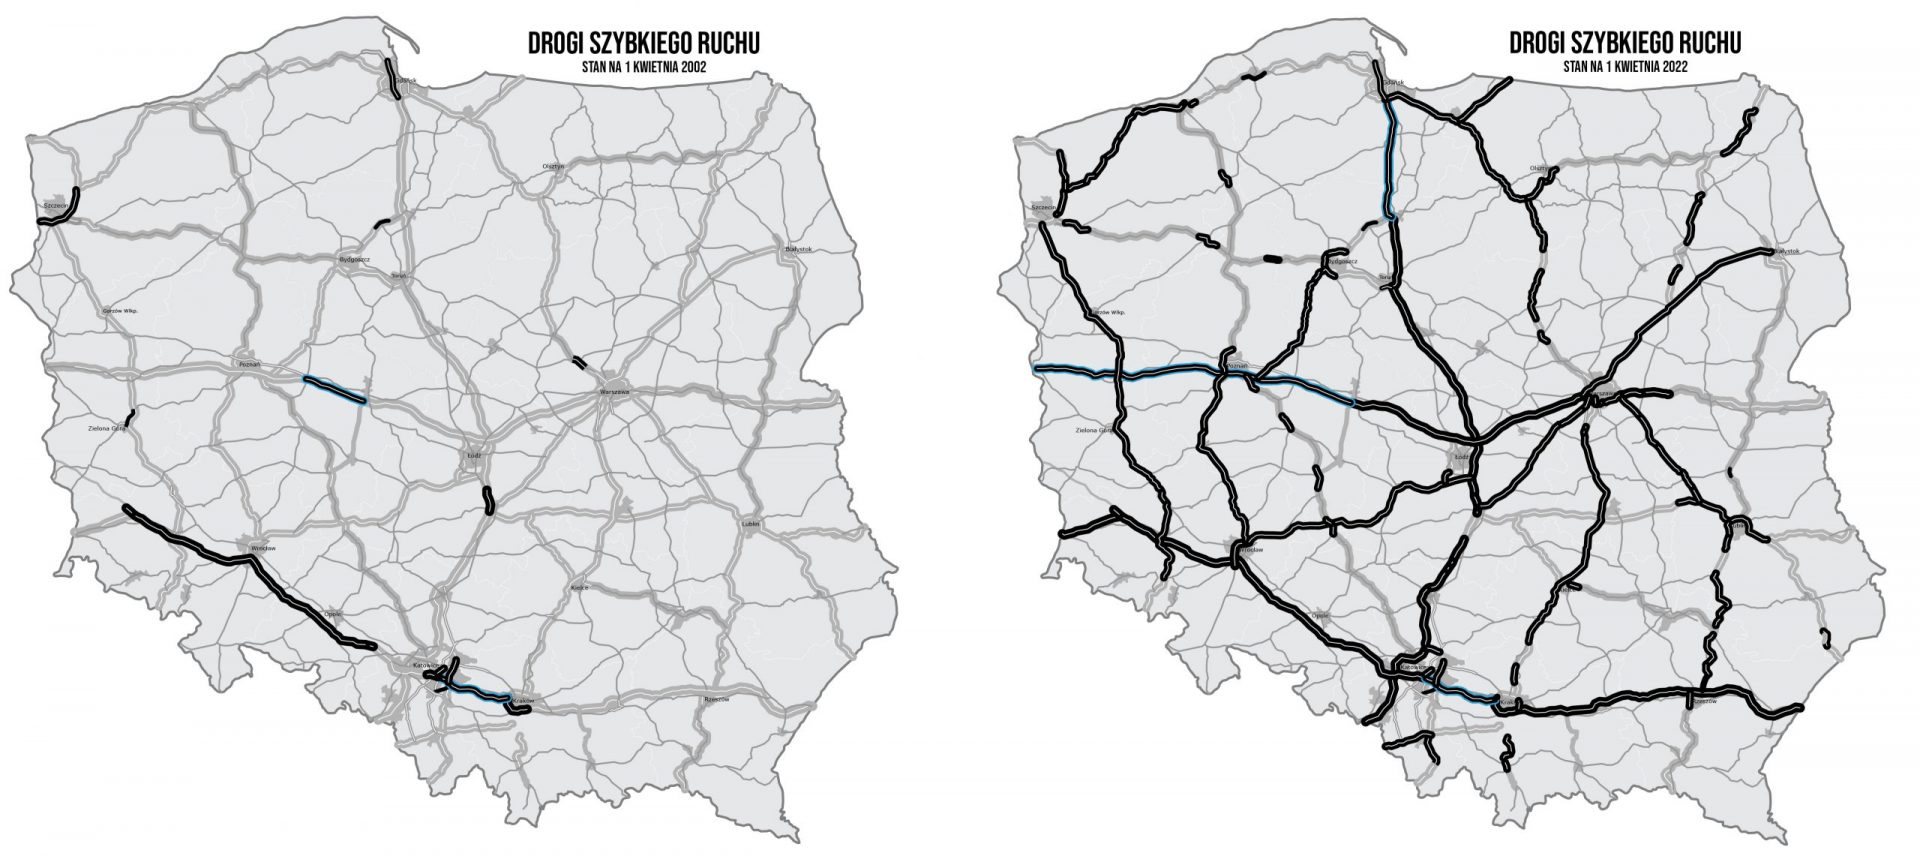 Drogi szybkiego ruchu 2002 i 2022 - porównanie map